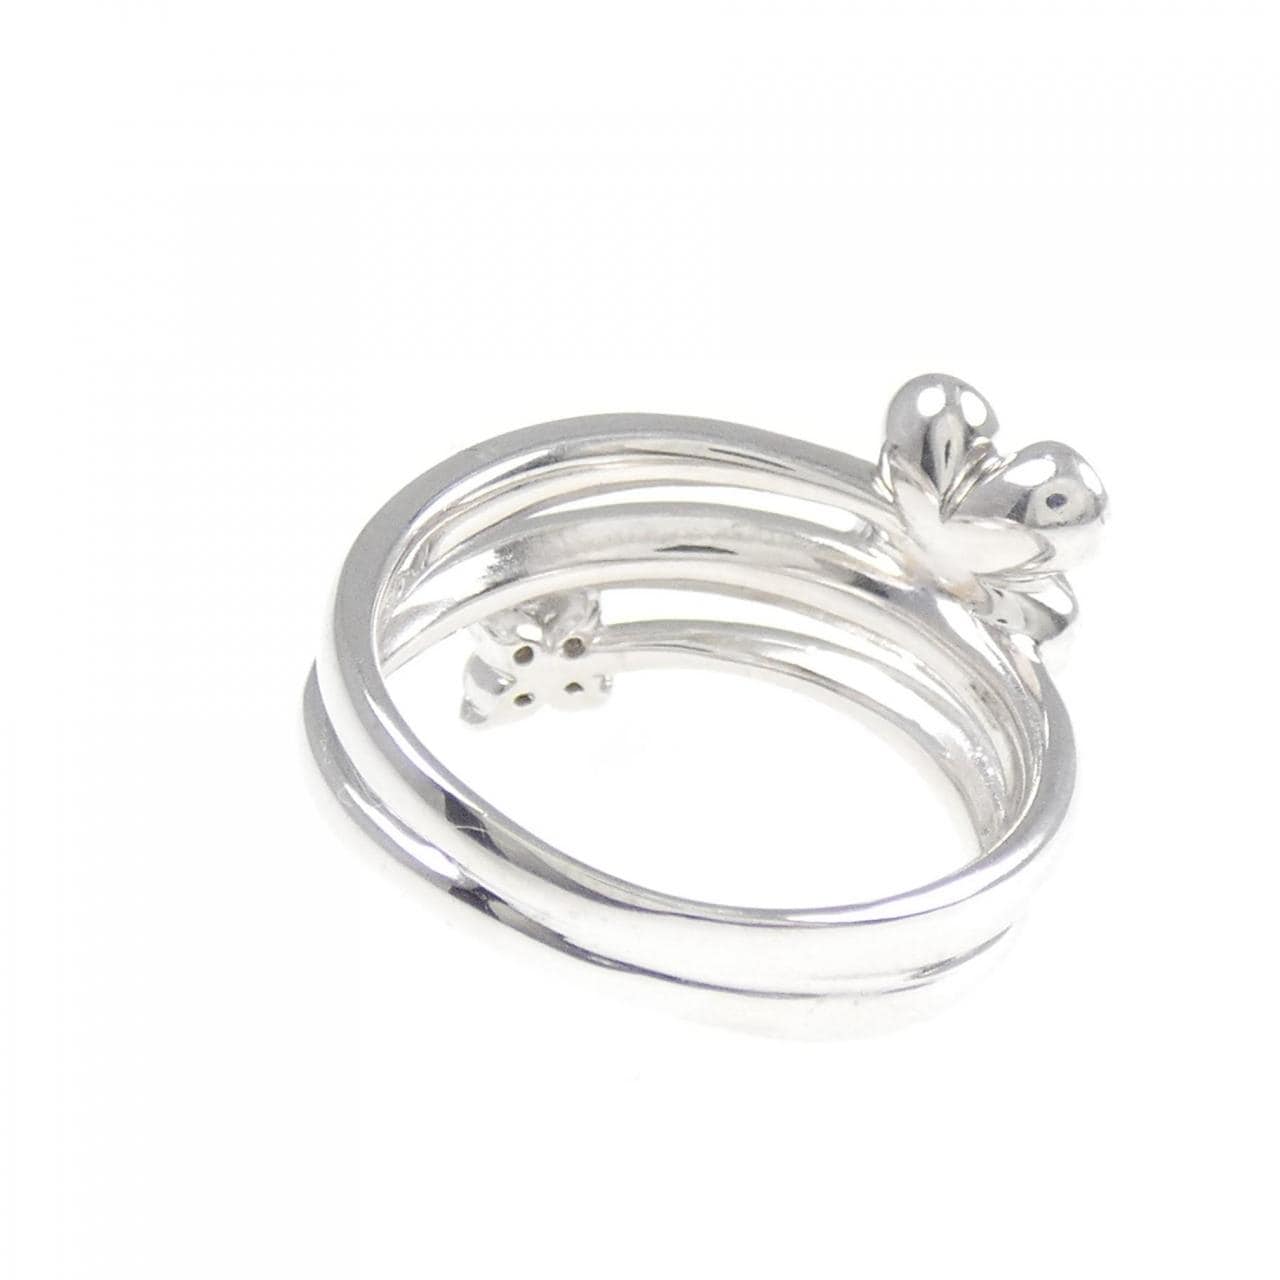 K18WG flower Diamond ring 0.20CT